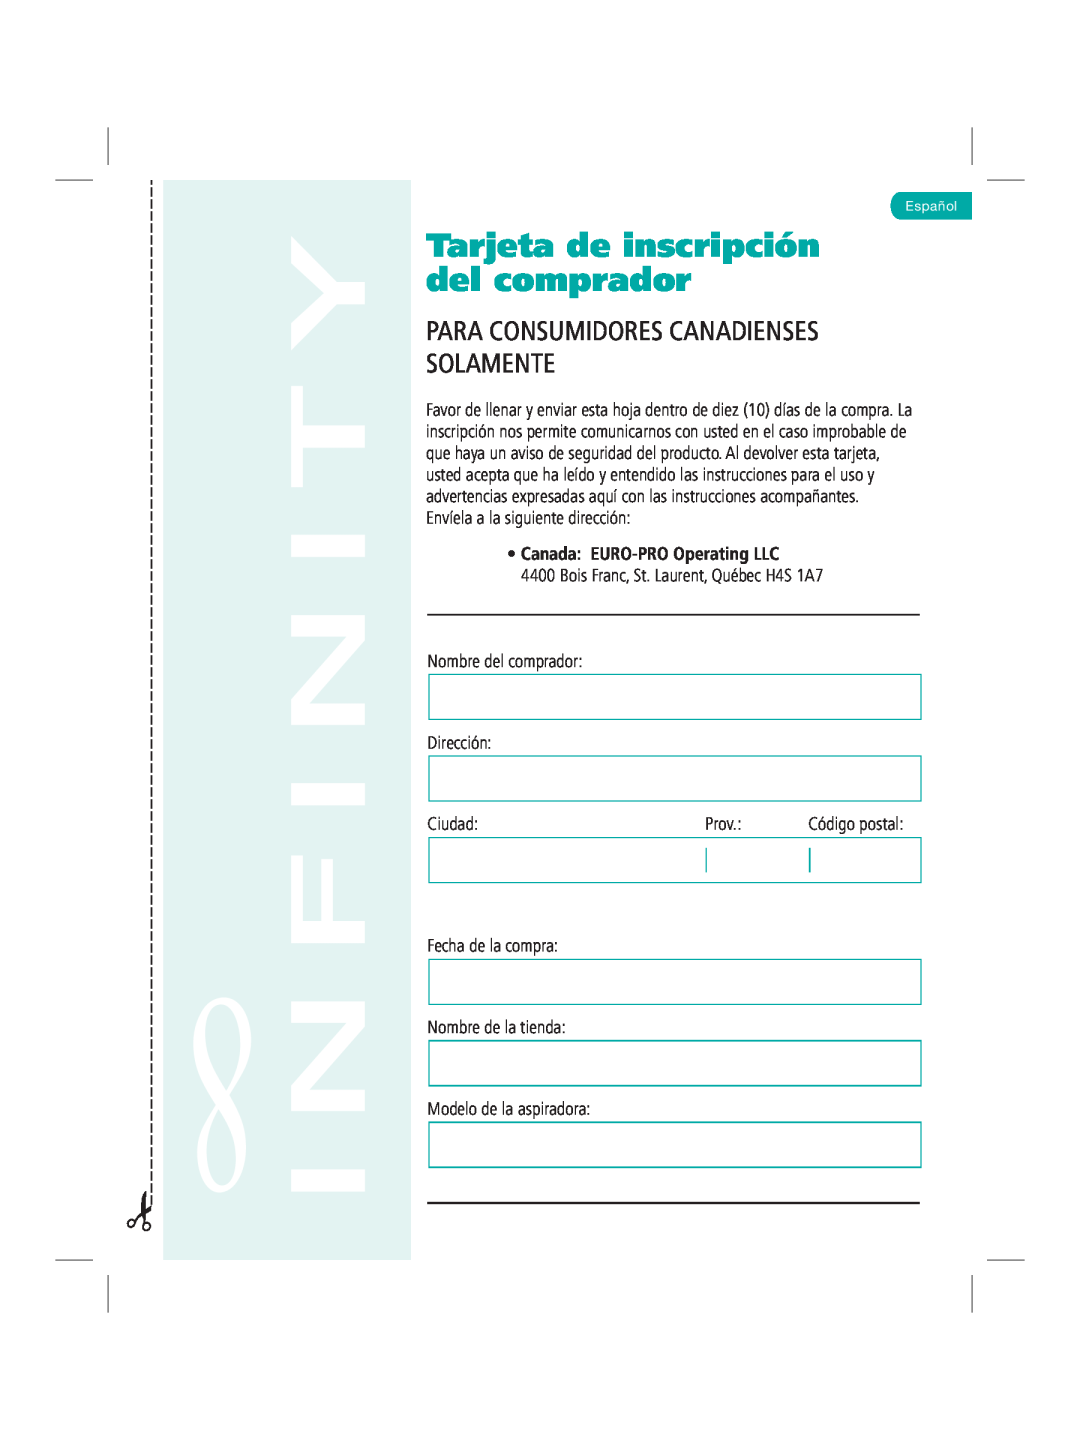 Infinity NV22Q Tarjeta de inscripción del comprador, Nombre del comprador Dirección, Ciudad, Modelo de la aspiradora, Prov 